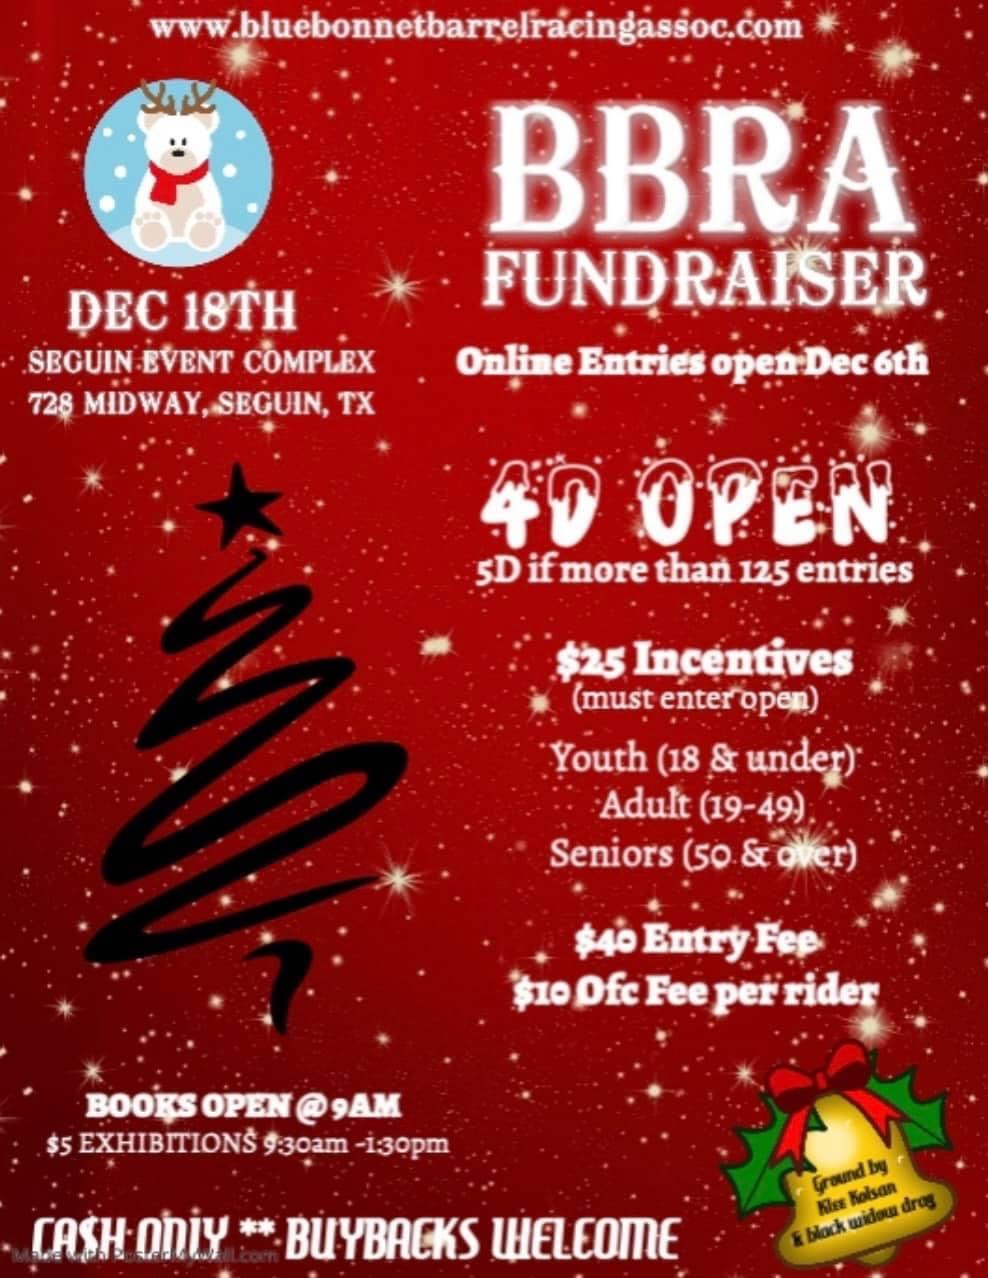 BBRA Fundraiser